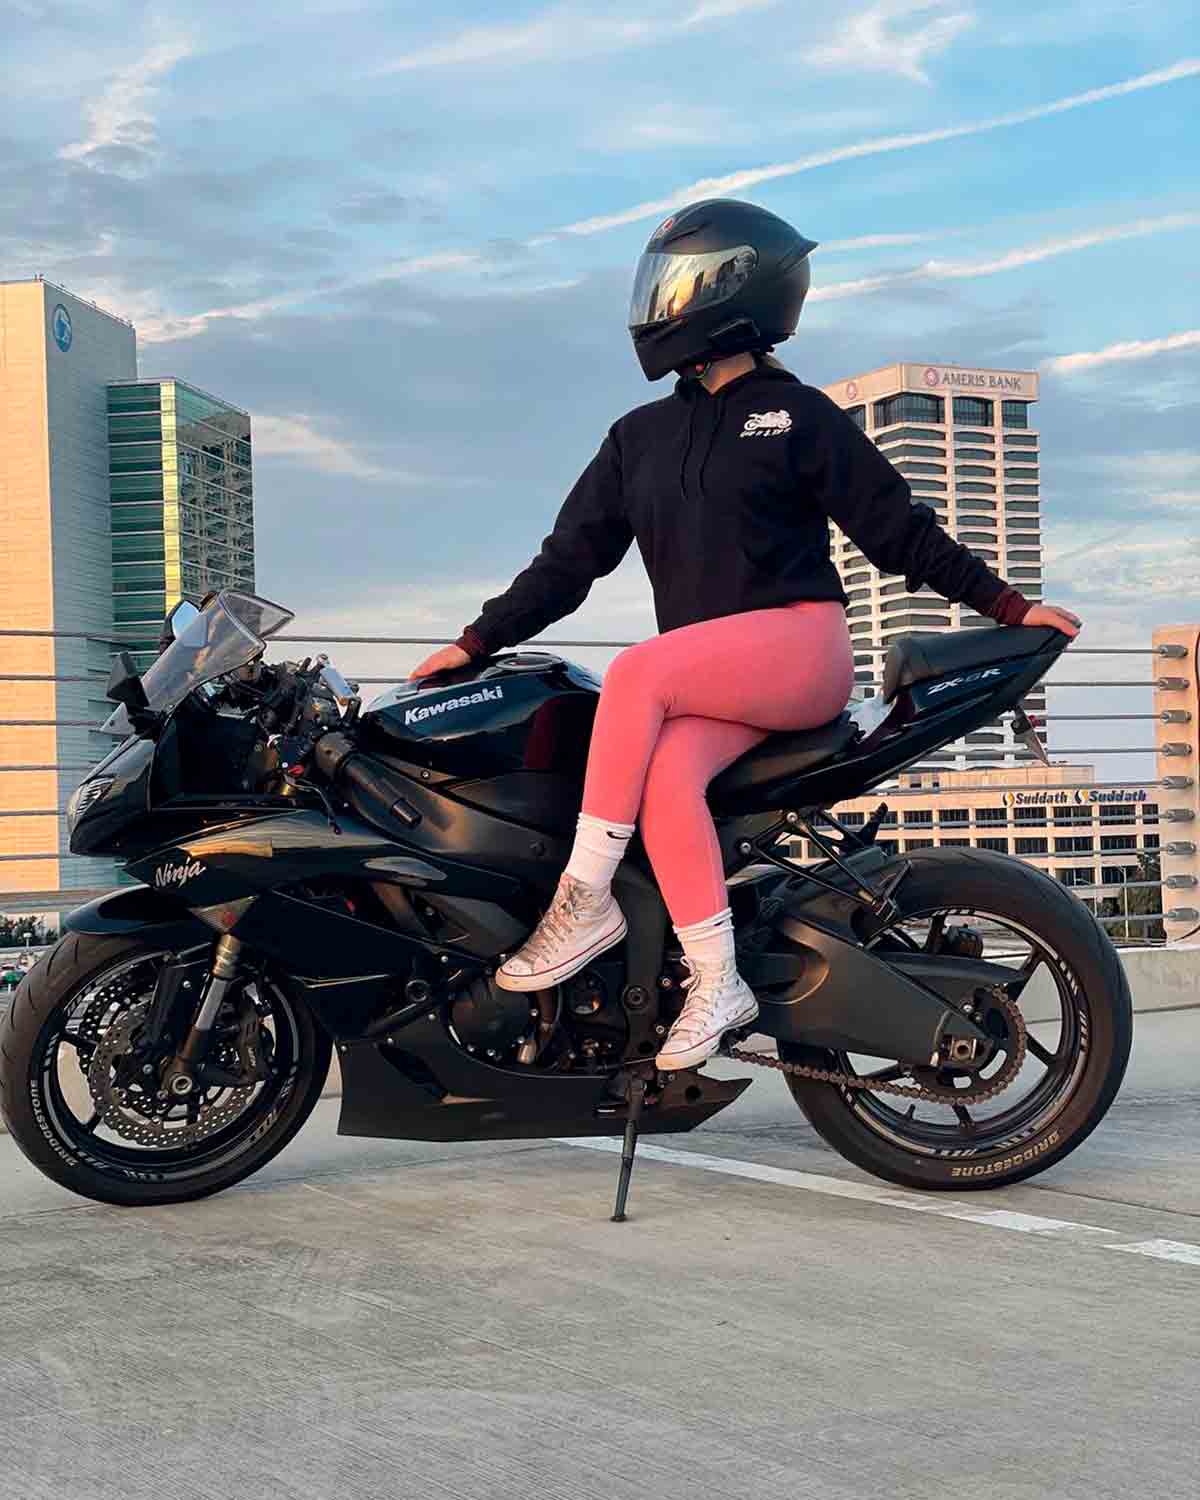 en motorcyklist lägger upp en video där hon driver med kommentarer om sin säkerhet, timmar före en dödlig olycka